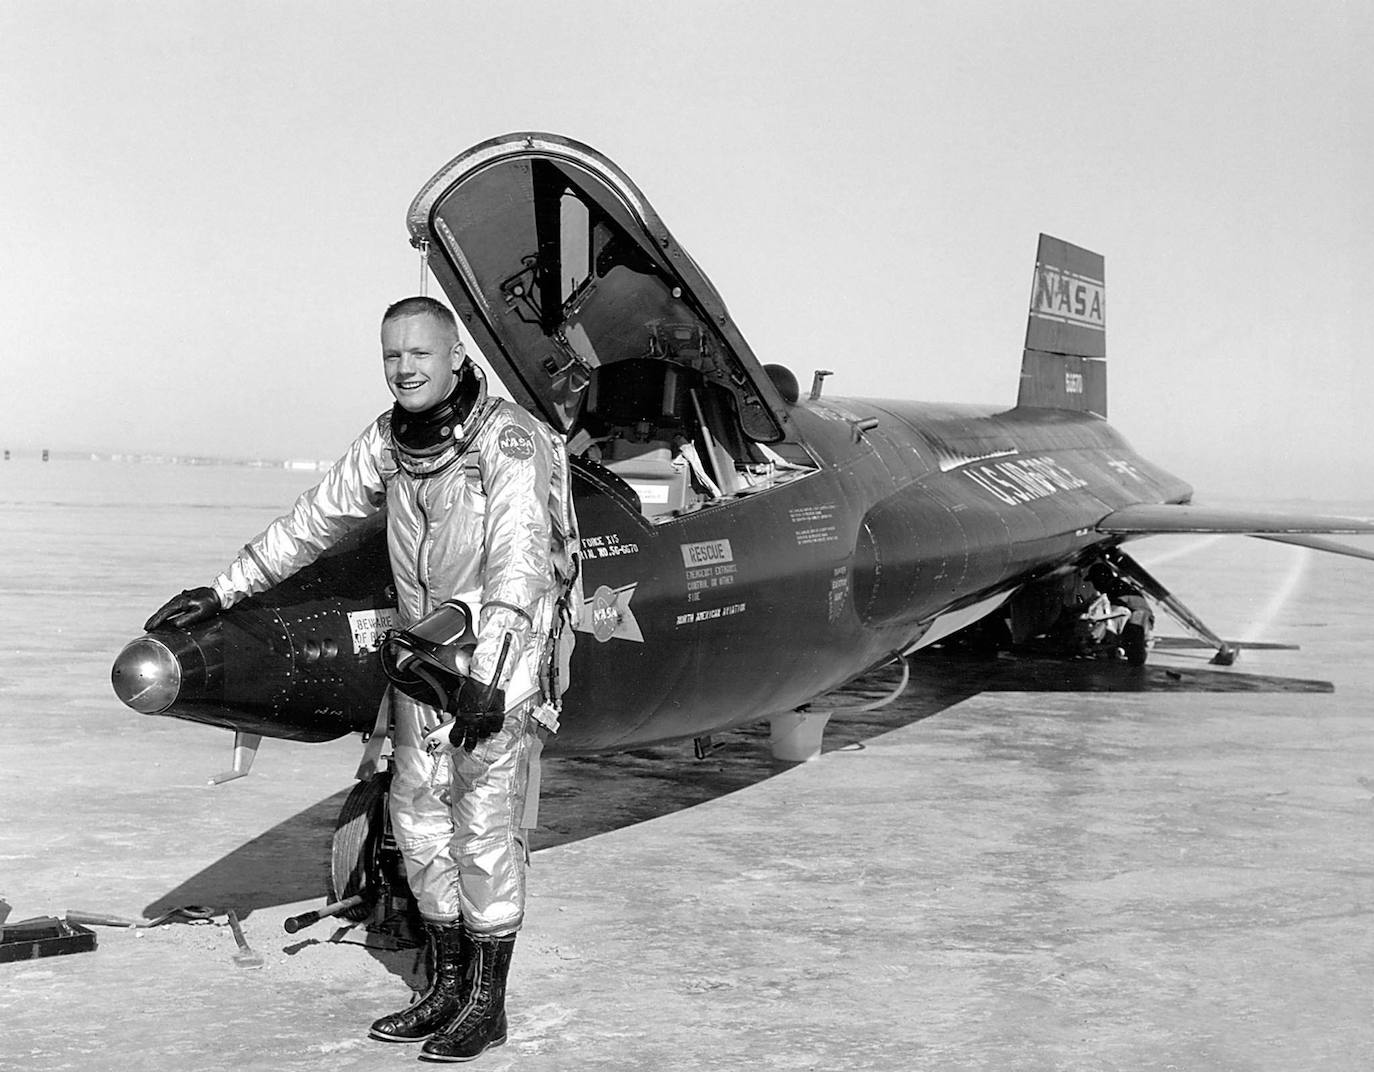 Esta imagen de archivo de la NASA de 1960 muestra al piloto Neil Armstrong visto junto a la nave X-15 después de un vuelo de investigación en el Dryden Flight Research Center en California. El X-15 voló durante un período de casi 10 años, desde junio de 1959 hasta octubre de 1968, y estableció los récords no oficiales de velocidad y altitud del mundo.